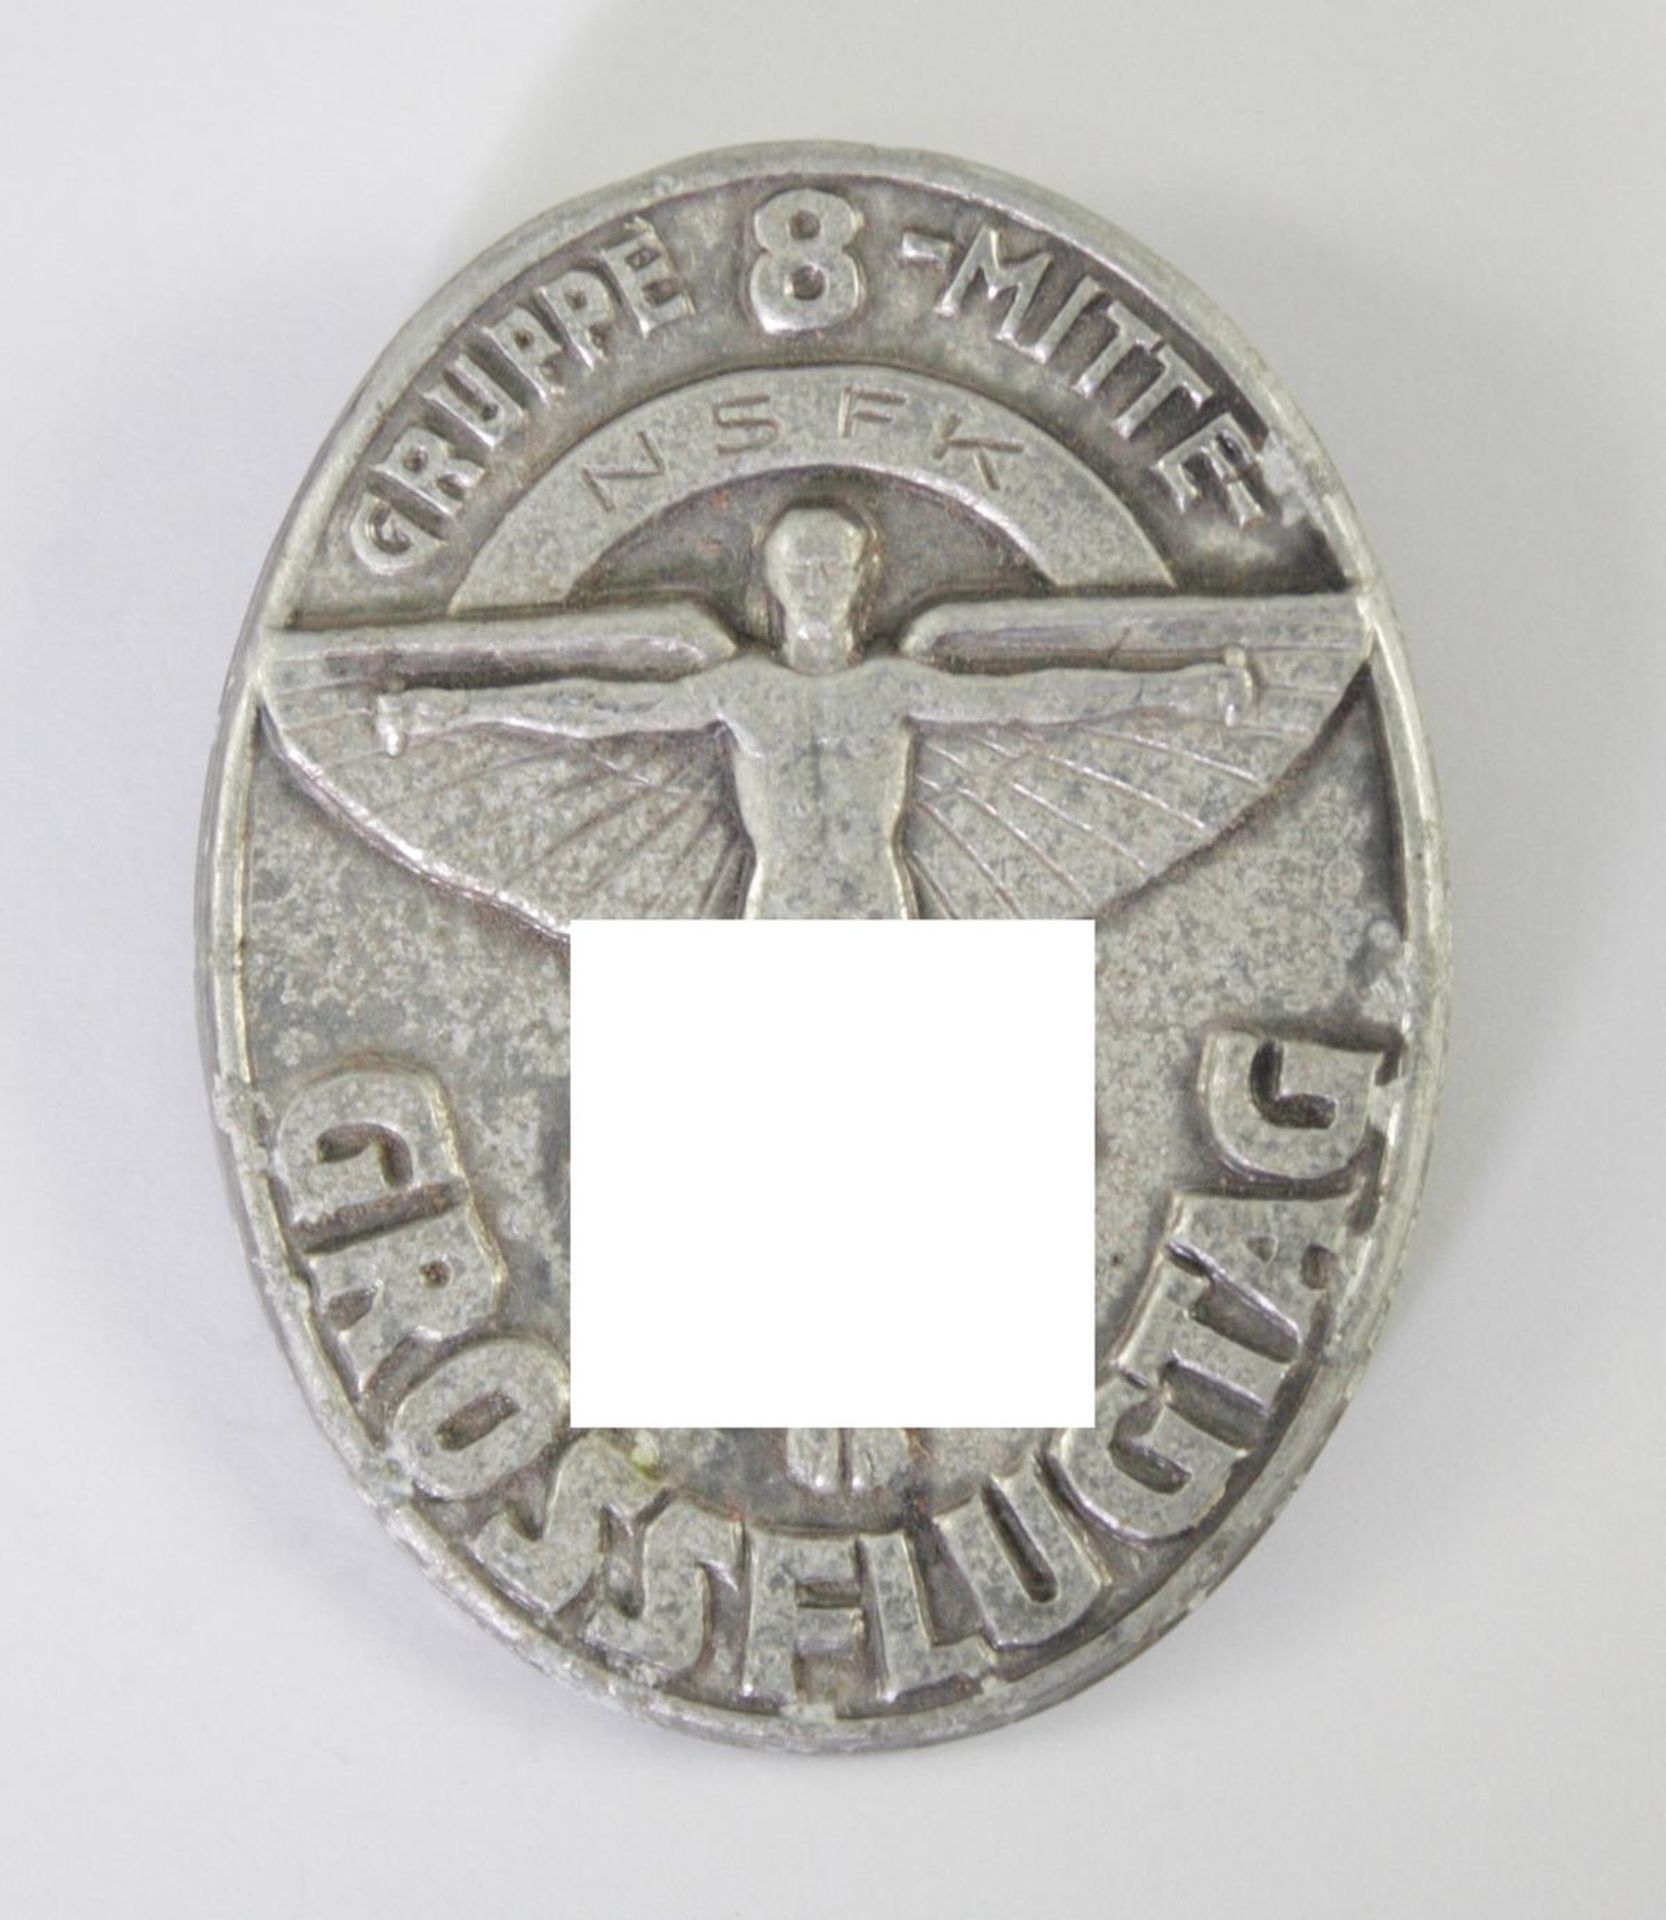 Abzeichen, NSFK (Nationalsozialistisches Fliegerkorps) - Gruppe 8 Mitte, Grossflugtag